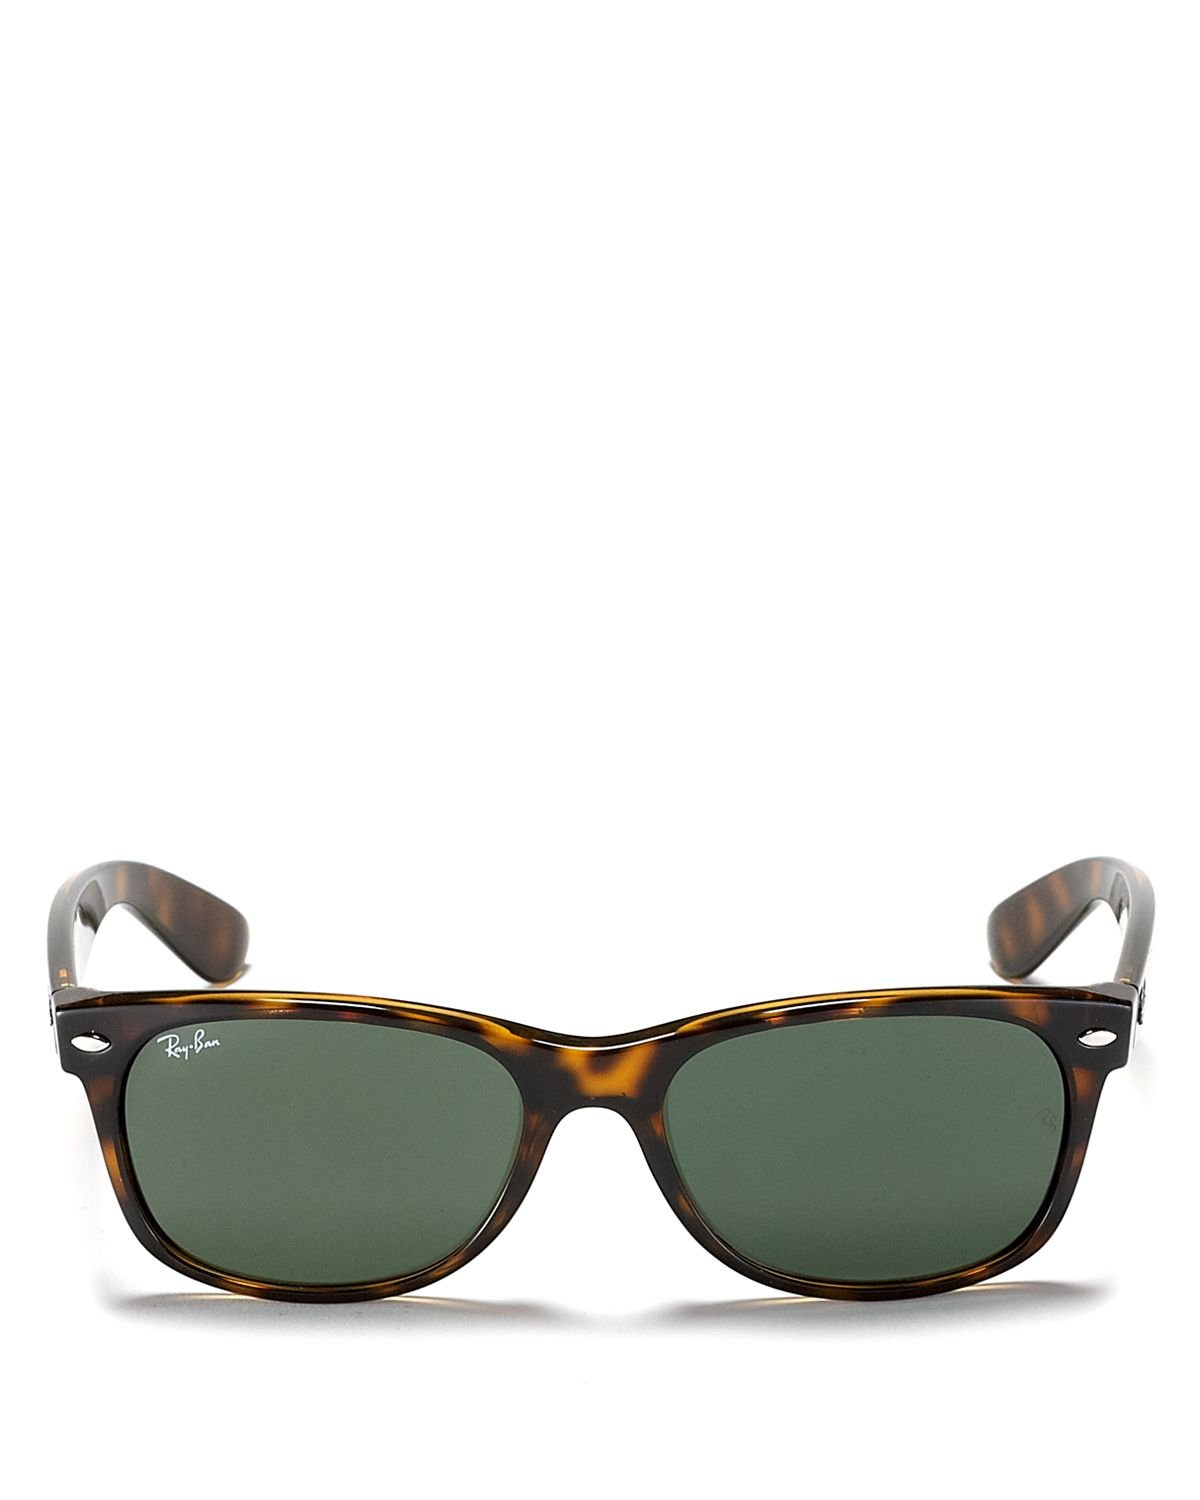 Ray-ban New Wayfarer Polarized Sunglasses in Brown for Men (Tortoise